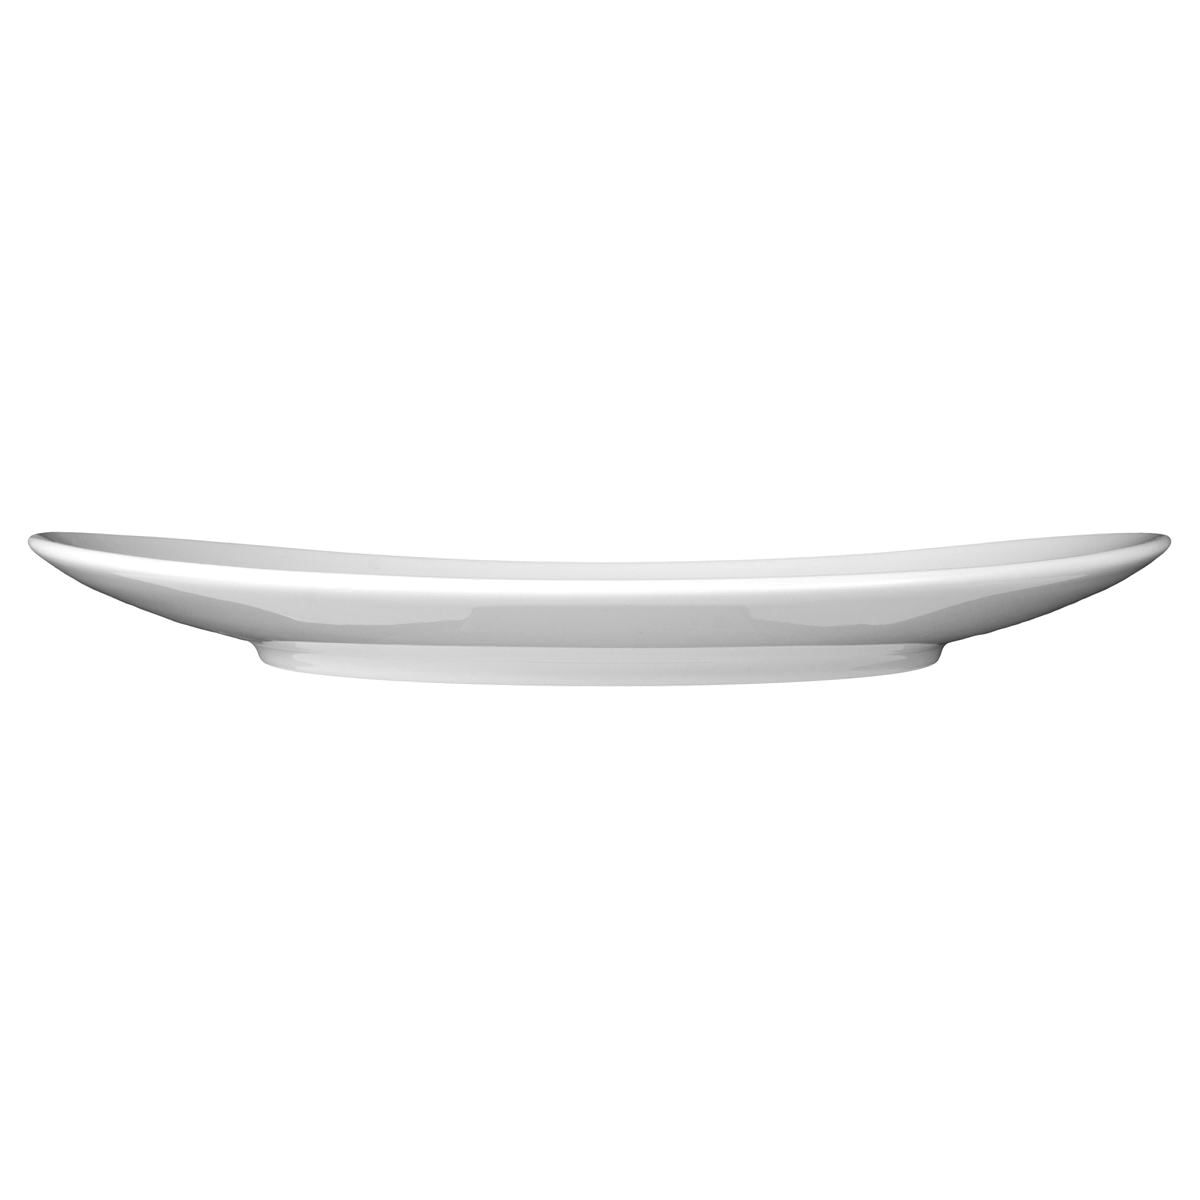 Teller oval 5192 - 29 cm - Serie Meran